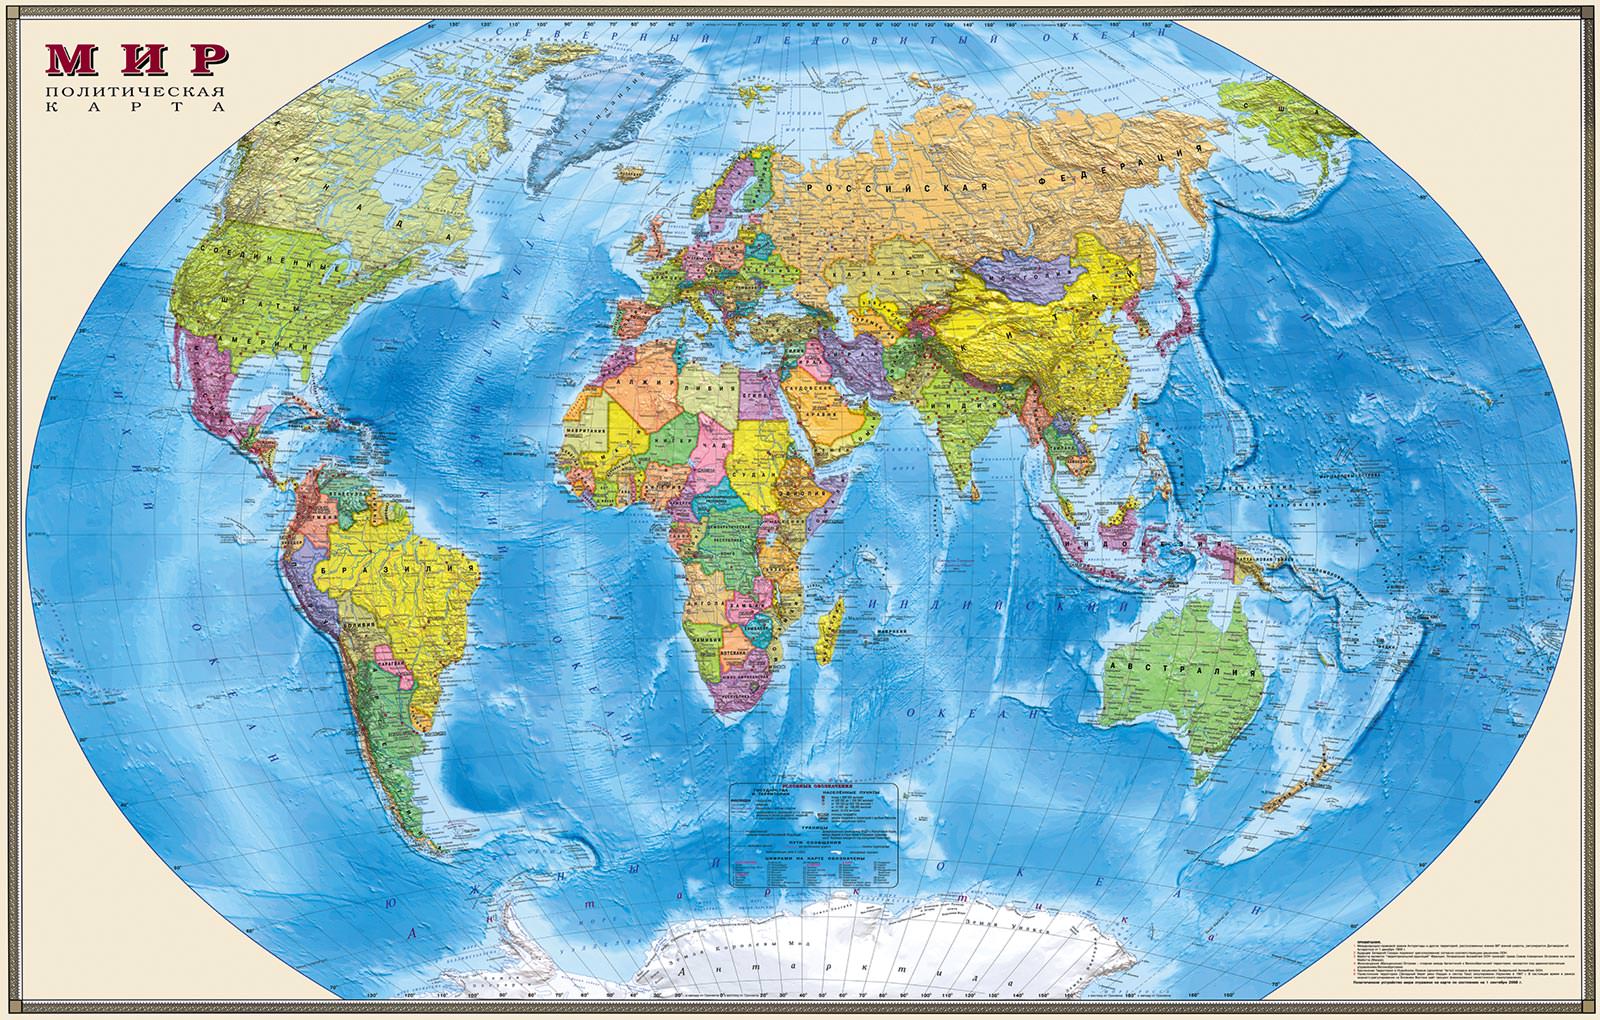 Политическая карта мира - заказать печать фотообоев в интернет магазинarte.ru. Заказать обои Политическая карта мира (1950)